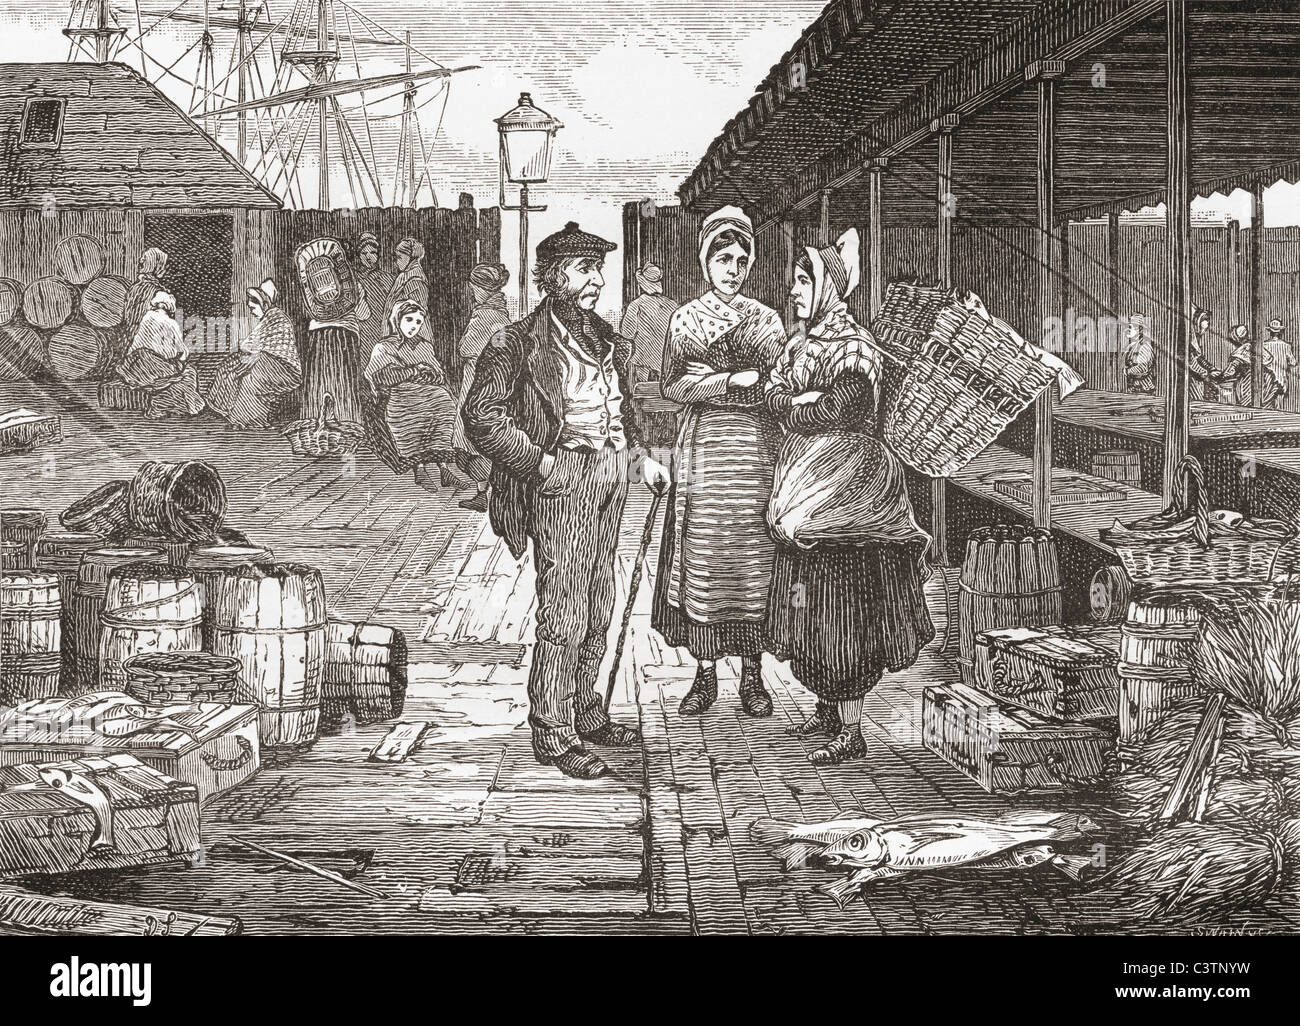 Ein Fischmarkt in Aberdeen, Schottland im späten 19. Jahrhundert. Stockfoto